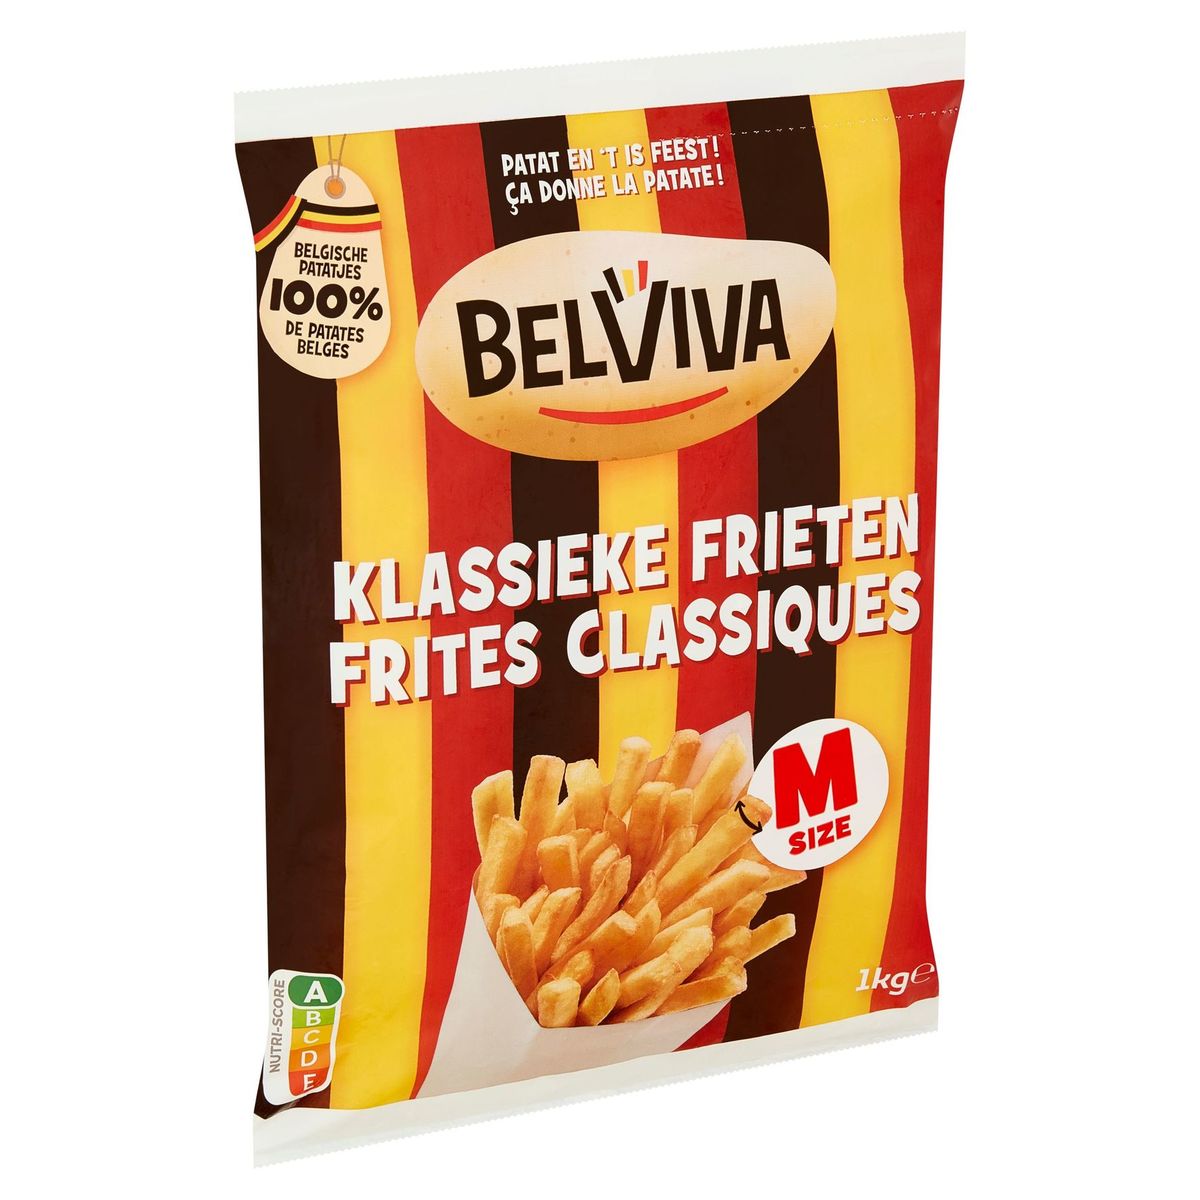 Belviva Frites Classiques M Size 1 kg